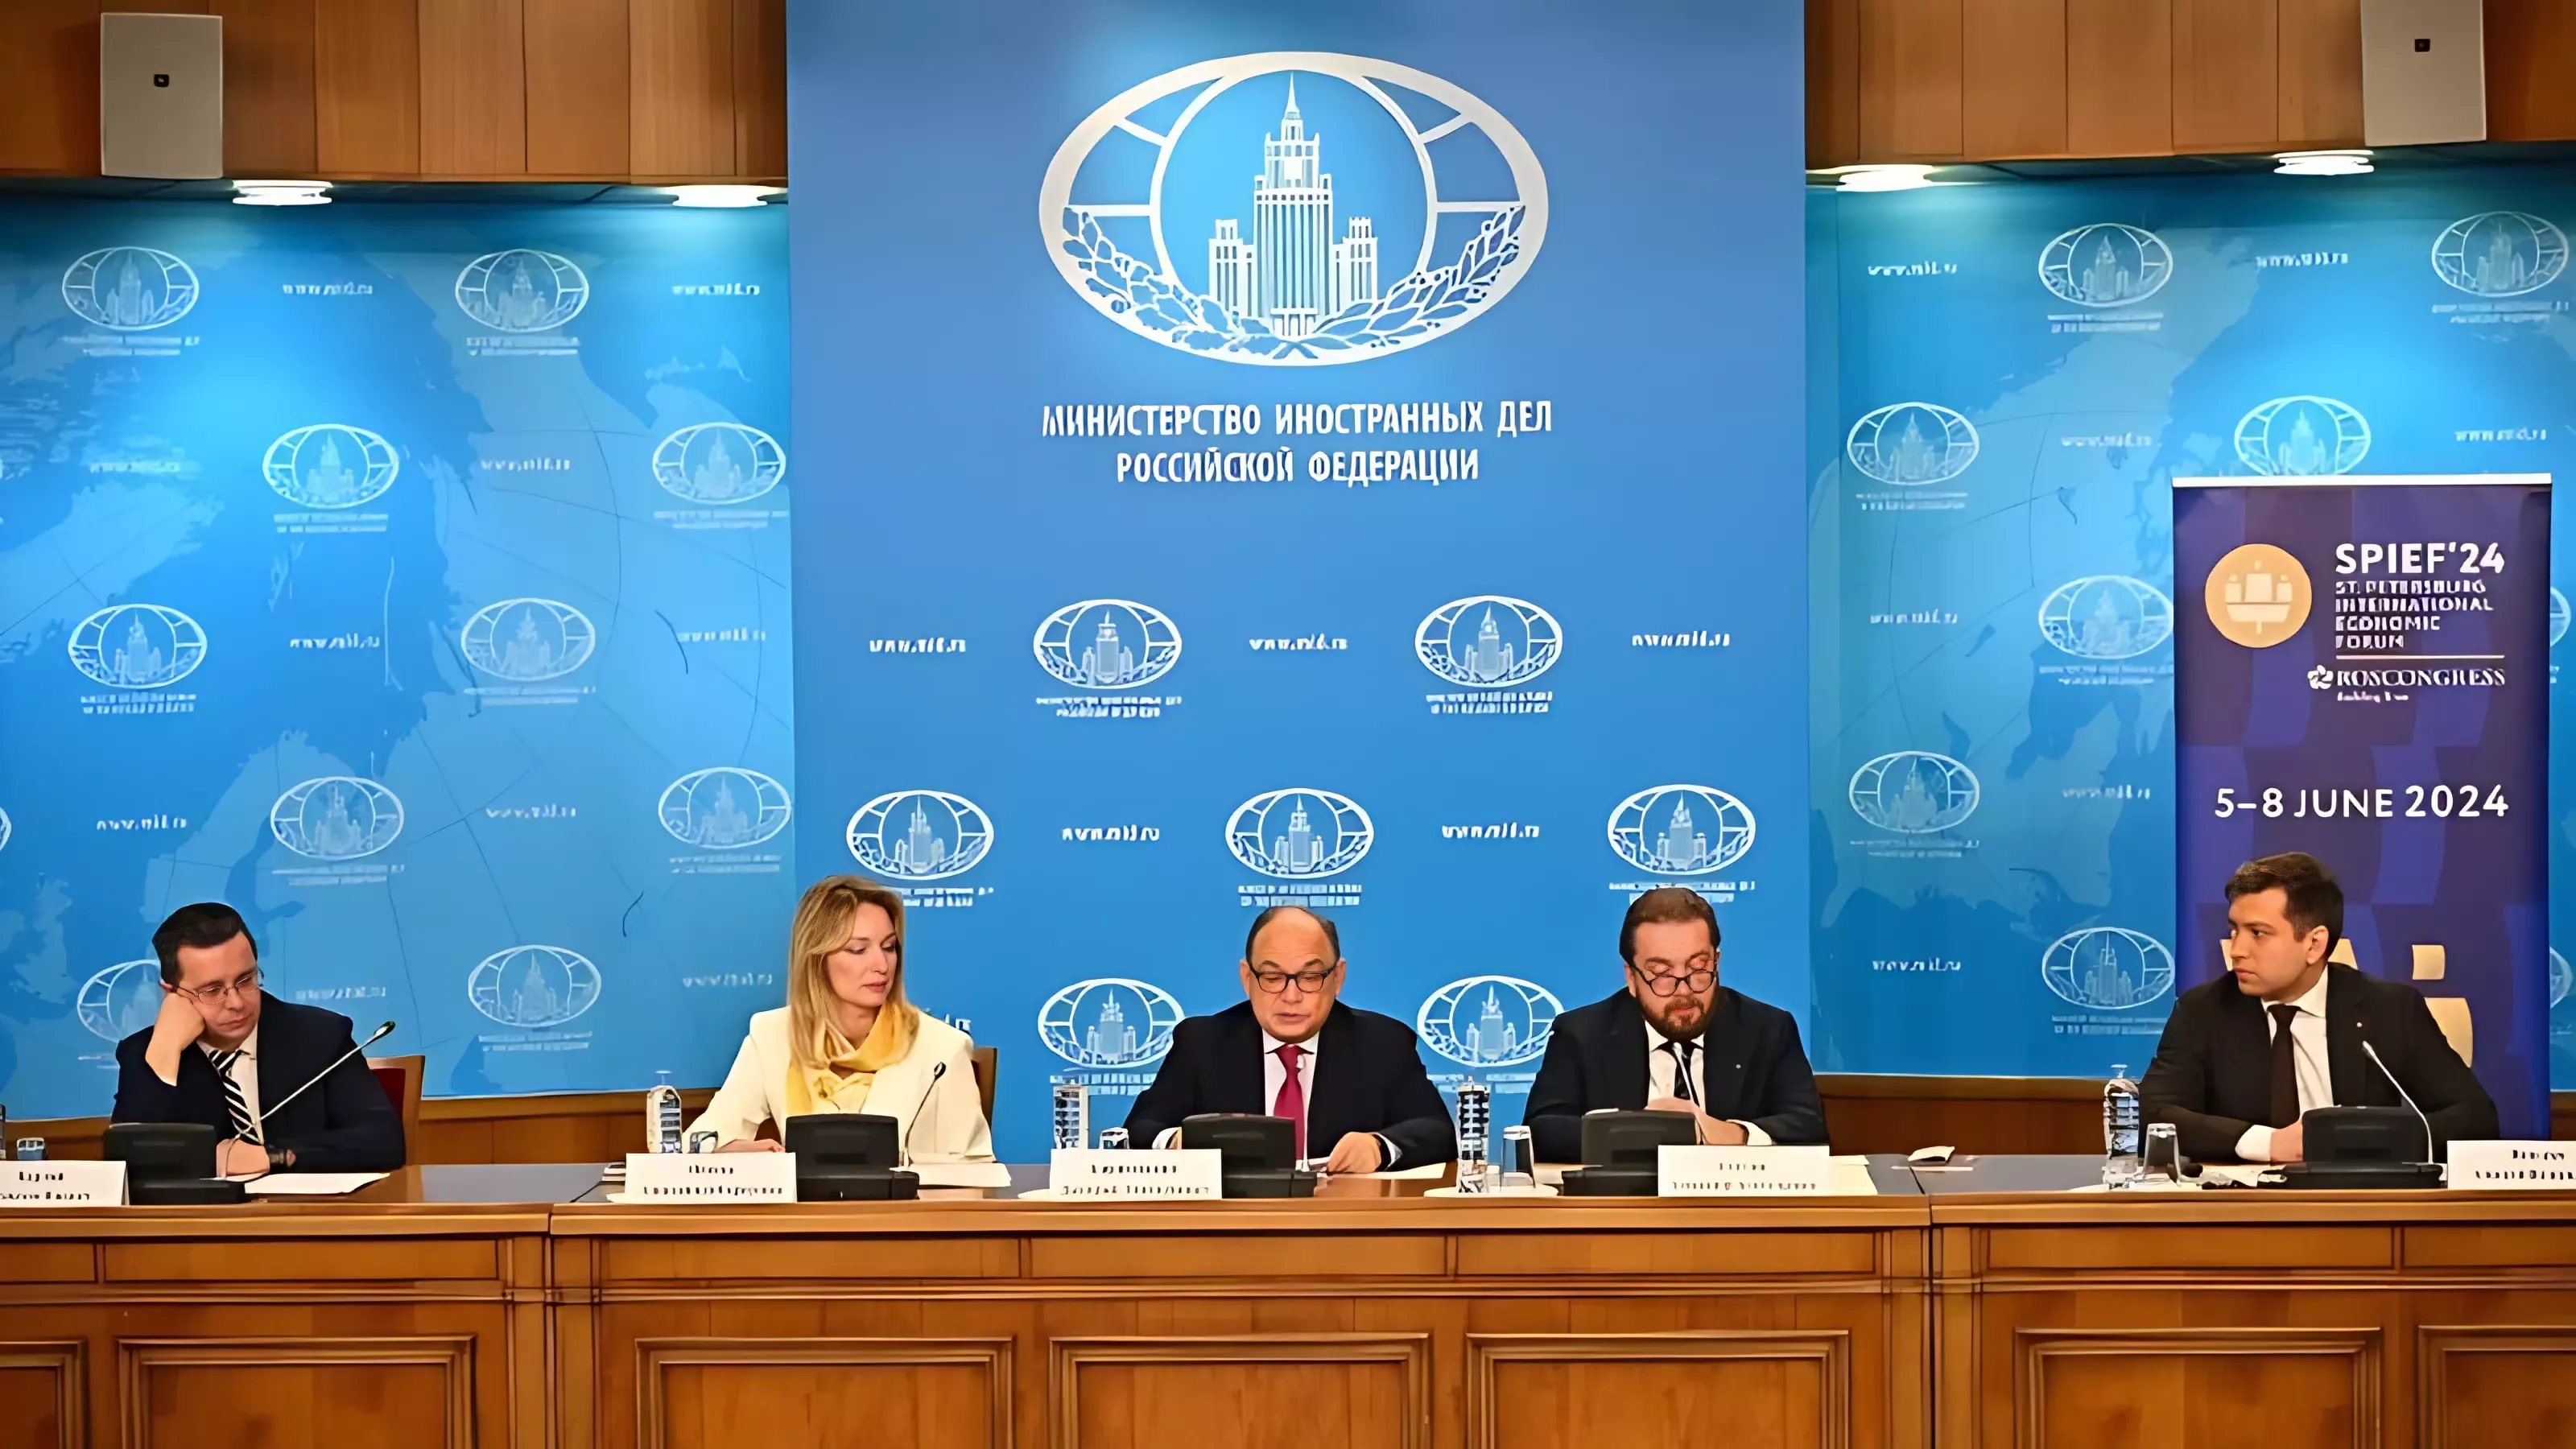 В МИД России провели презентацию ПМЭФ-2024 для иностранных послов